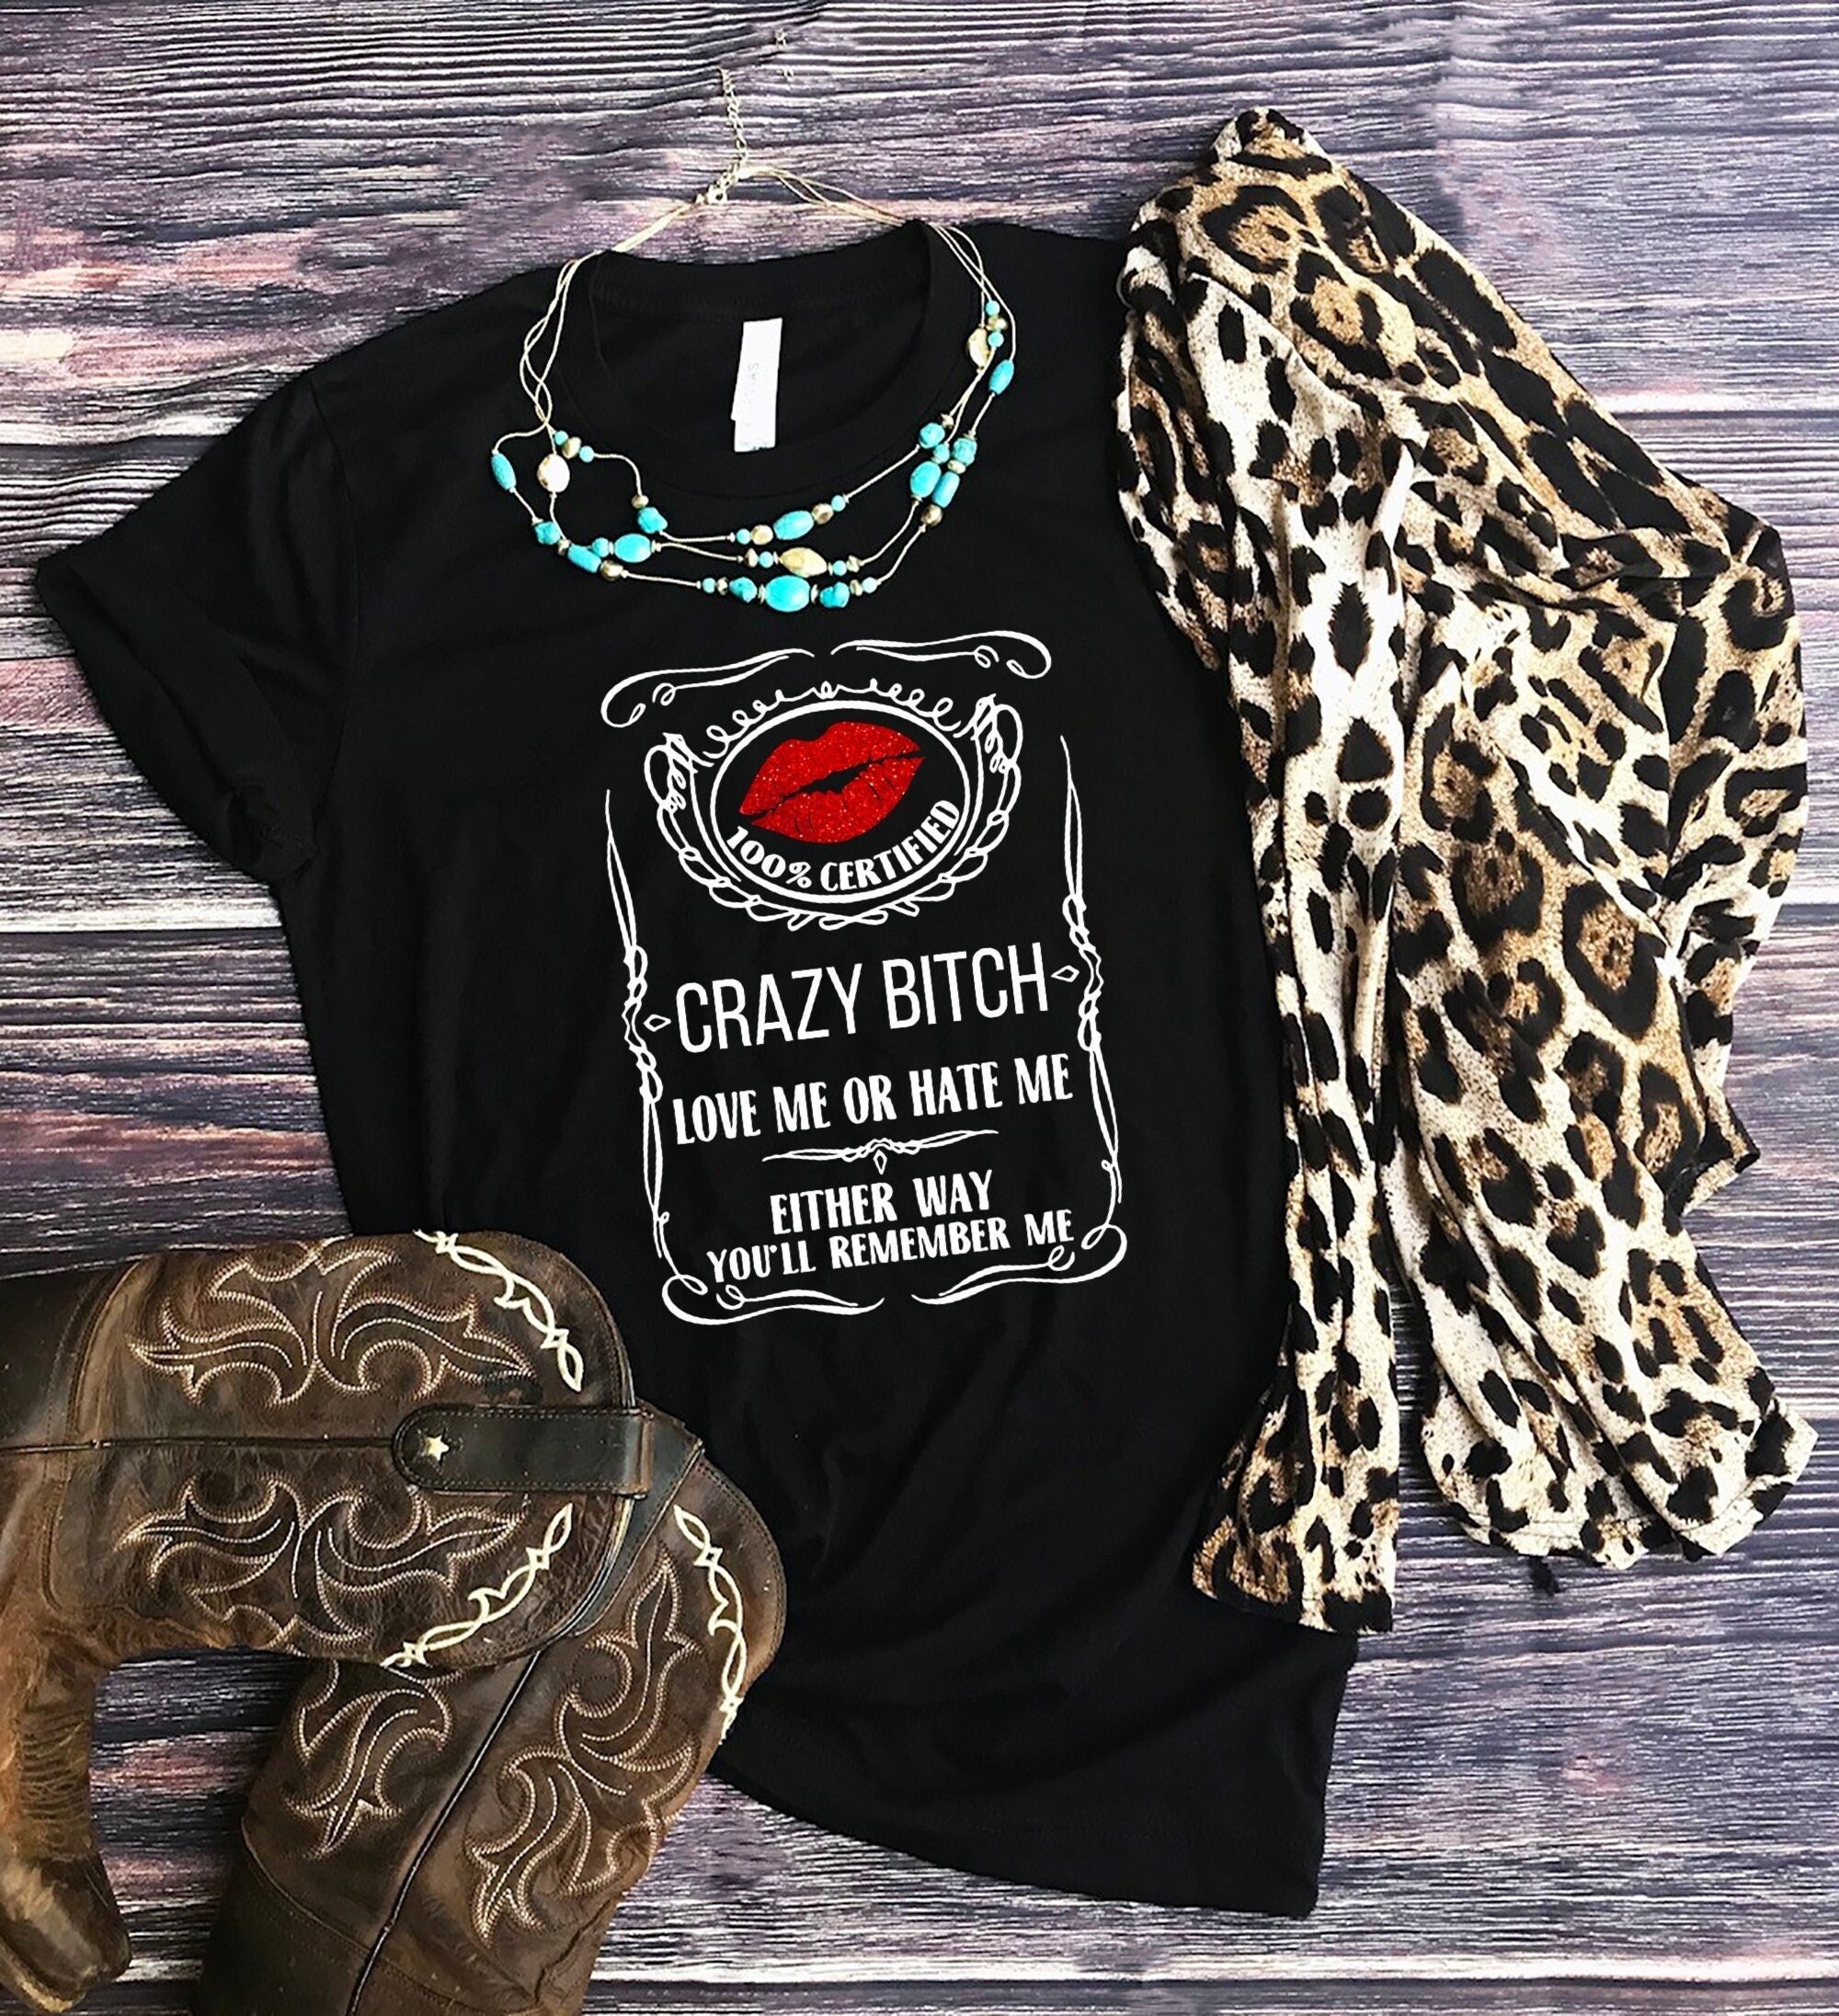 Crazy Unisex T-shirt, Crazy Bitch Shirt, Crazy Btch T-shirt